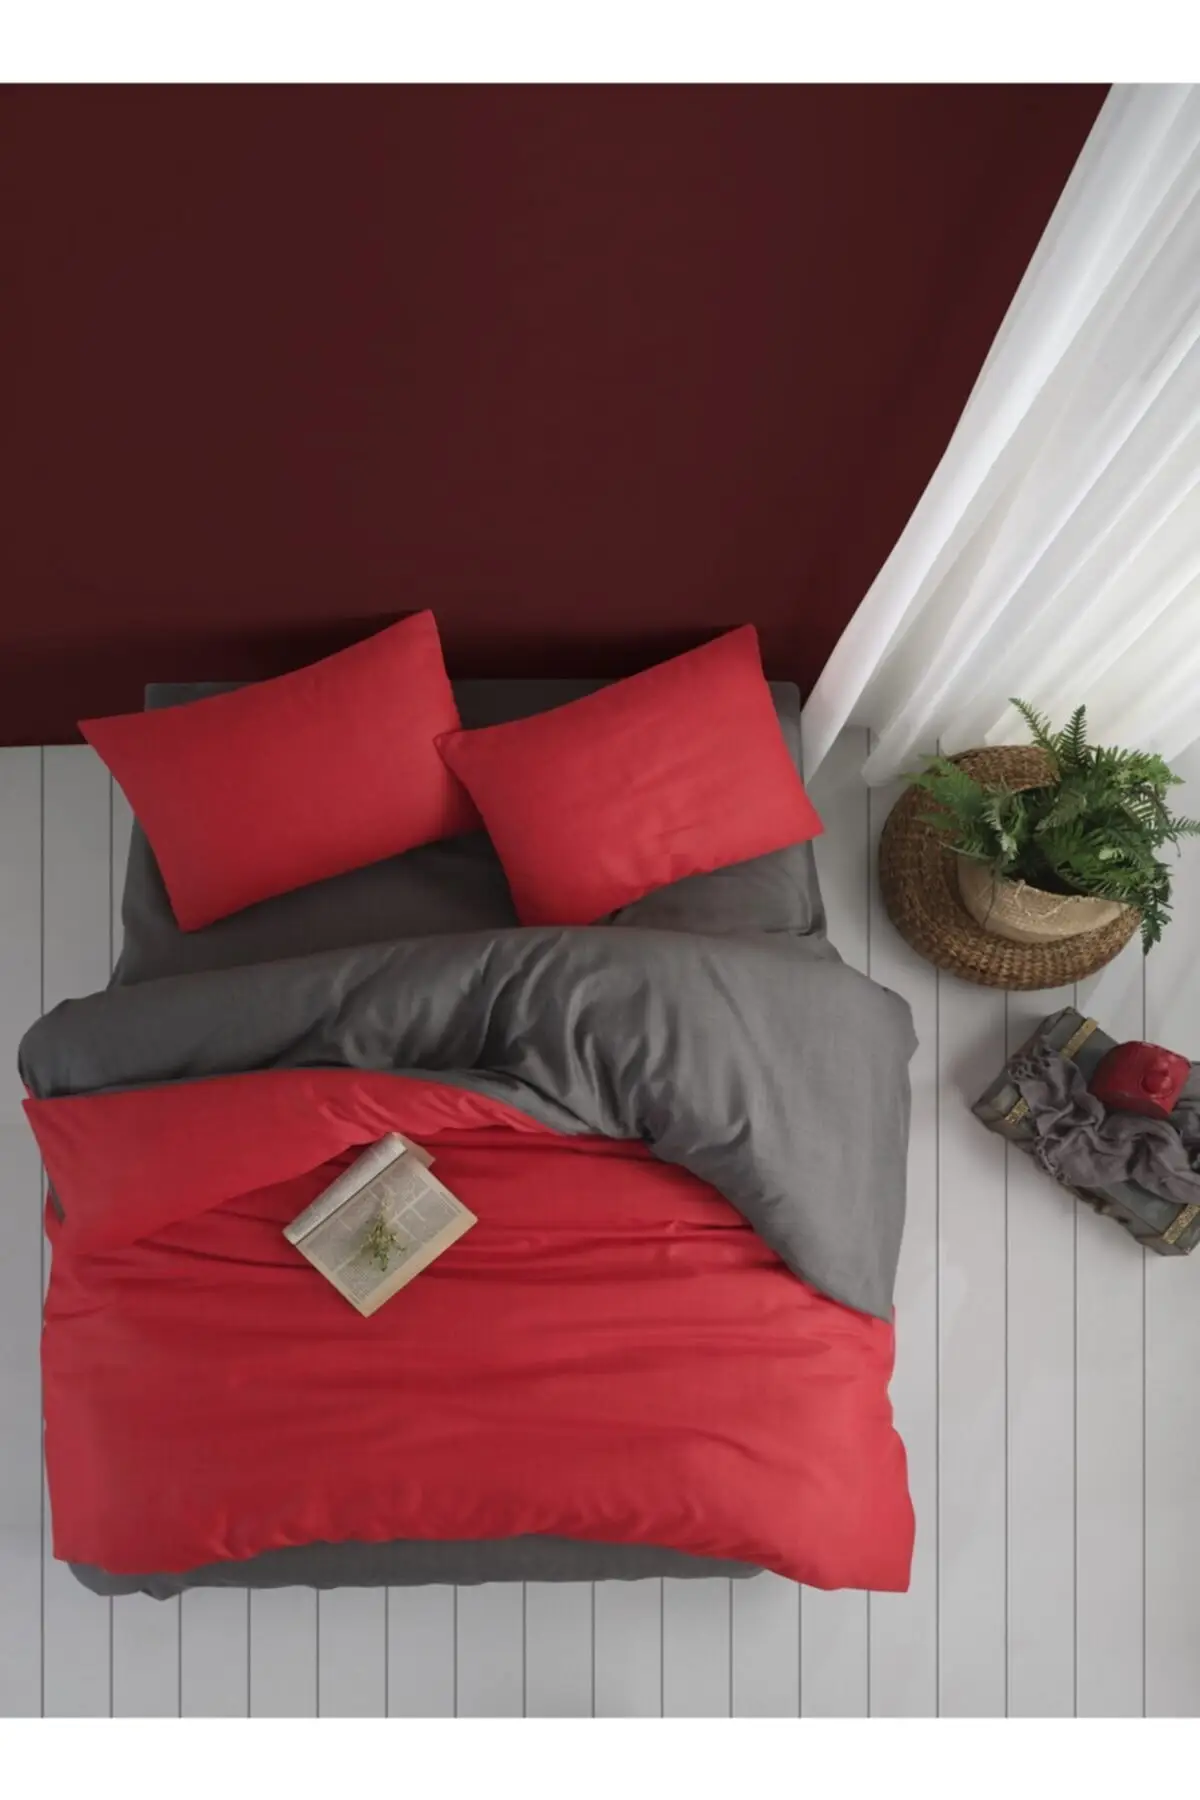 

Двойной индивидуальный комплект пододеяльников Redlove из хлопка и полиэстера 220x240 бескамерный красный одноразмерный текстиль для спальни и д...